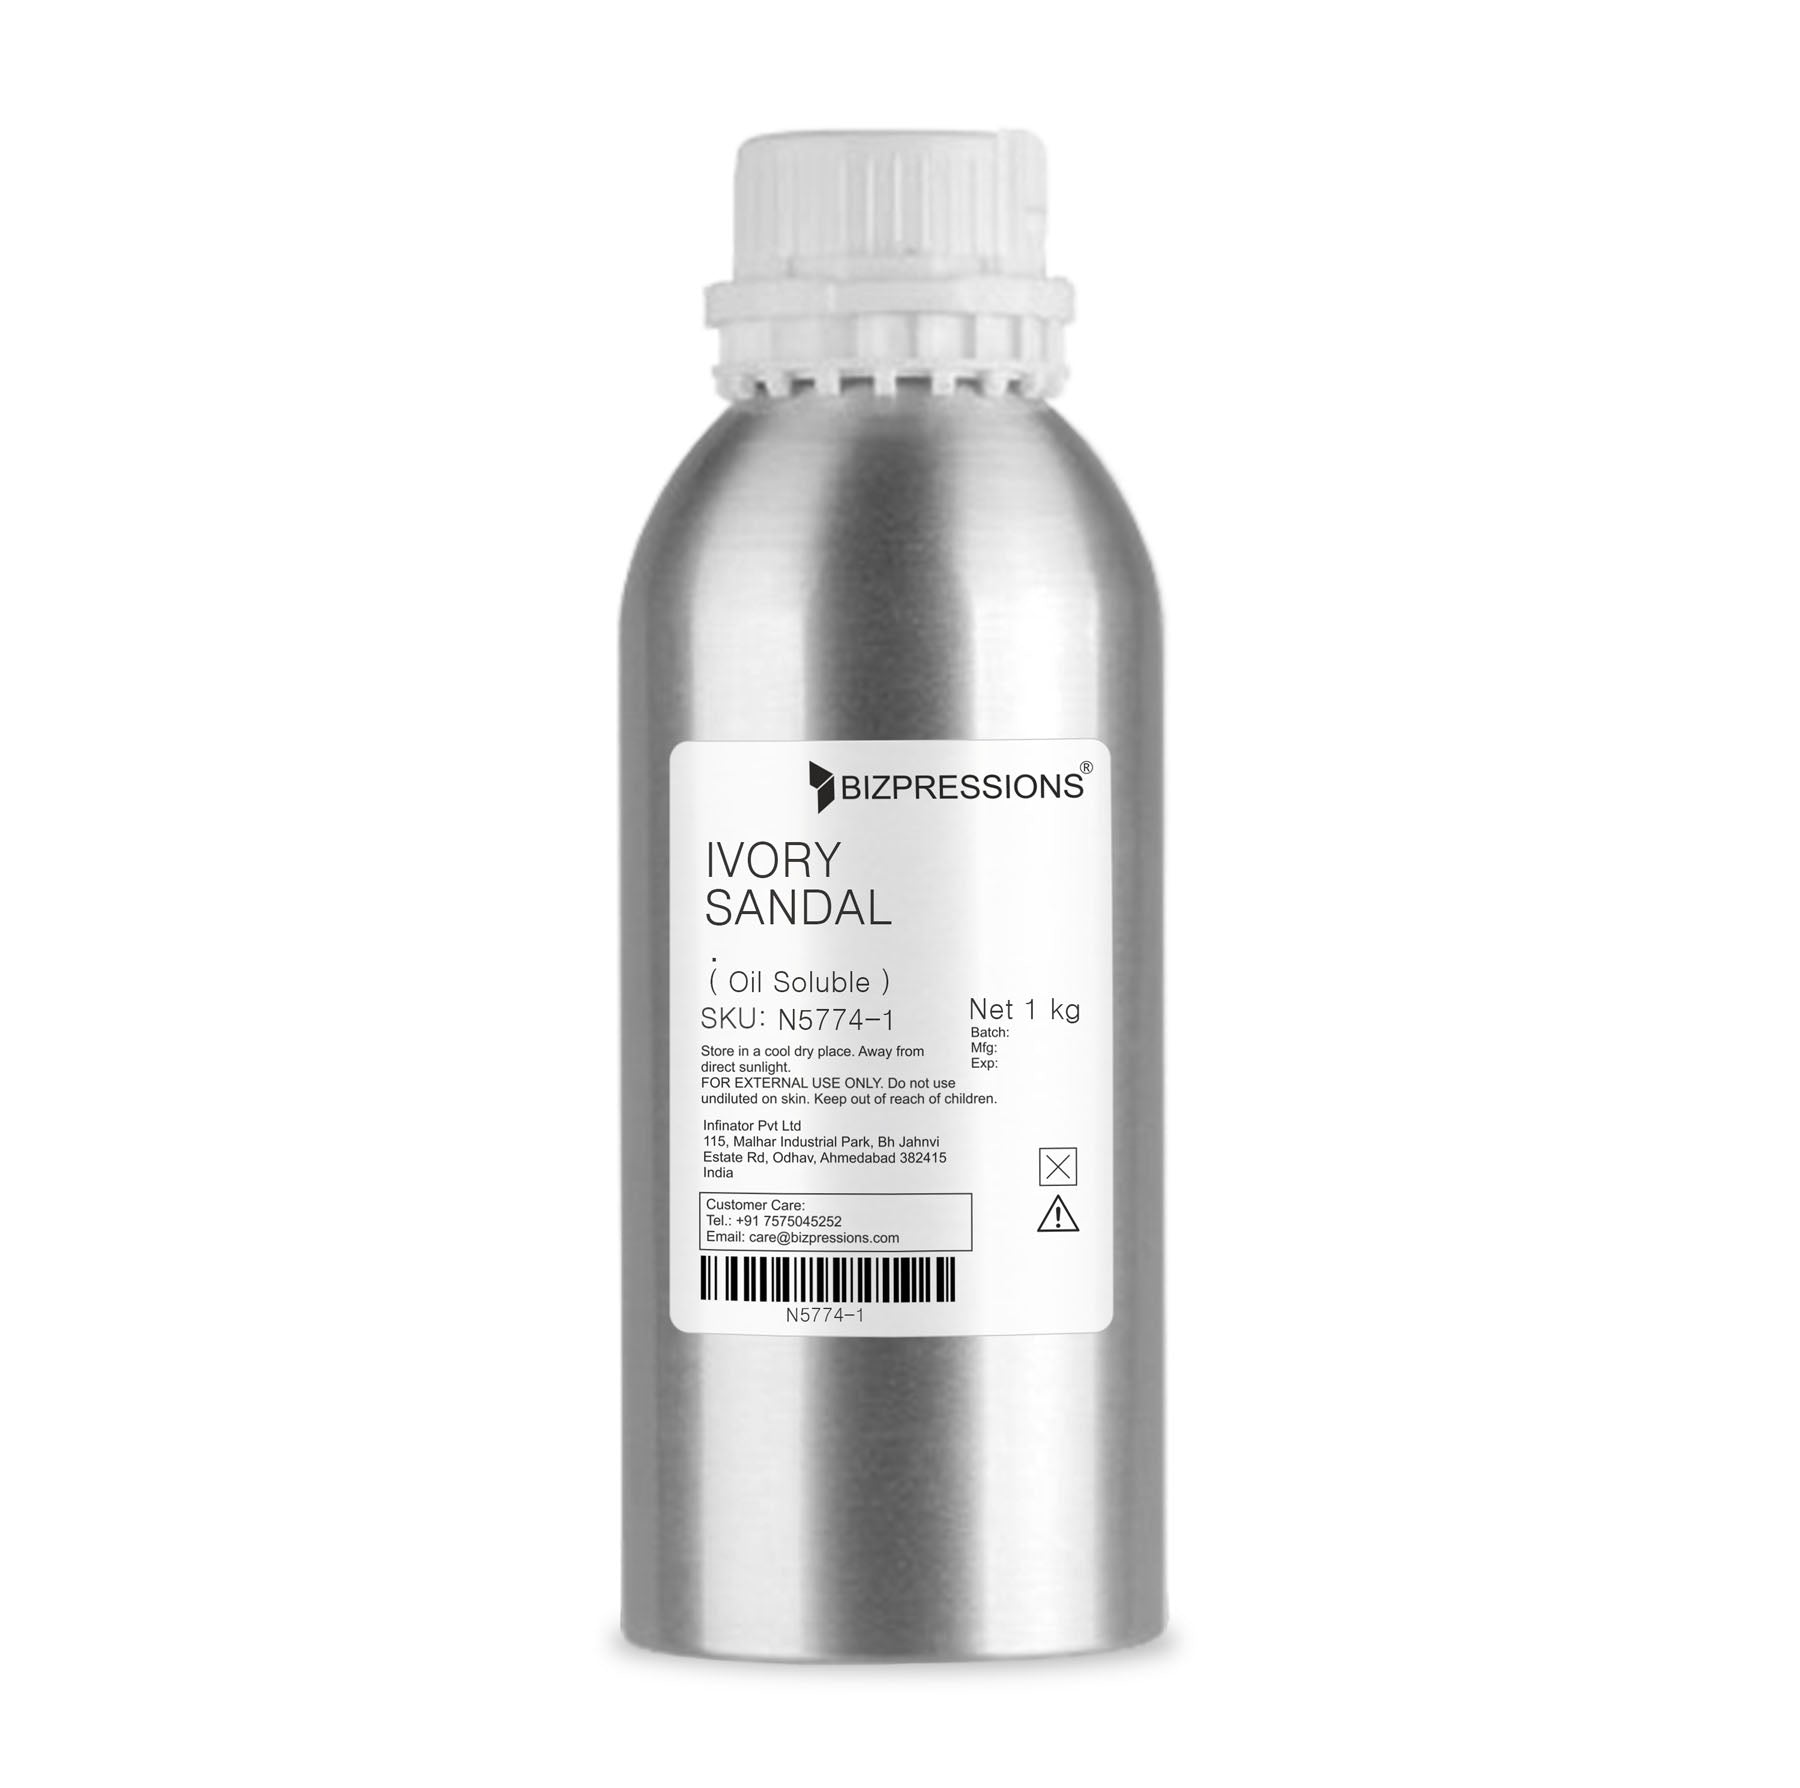 IVORY SANDAL - Fragrance ( Oil Soluble ) - 1 kg